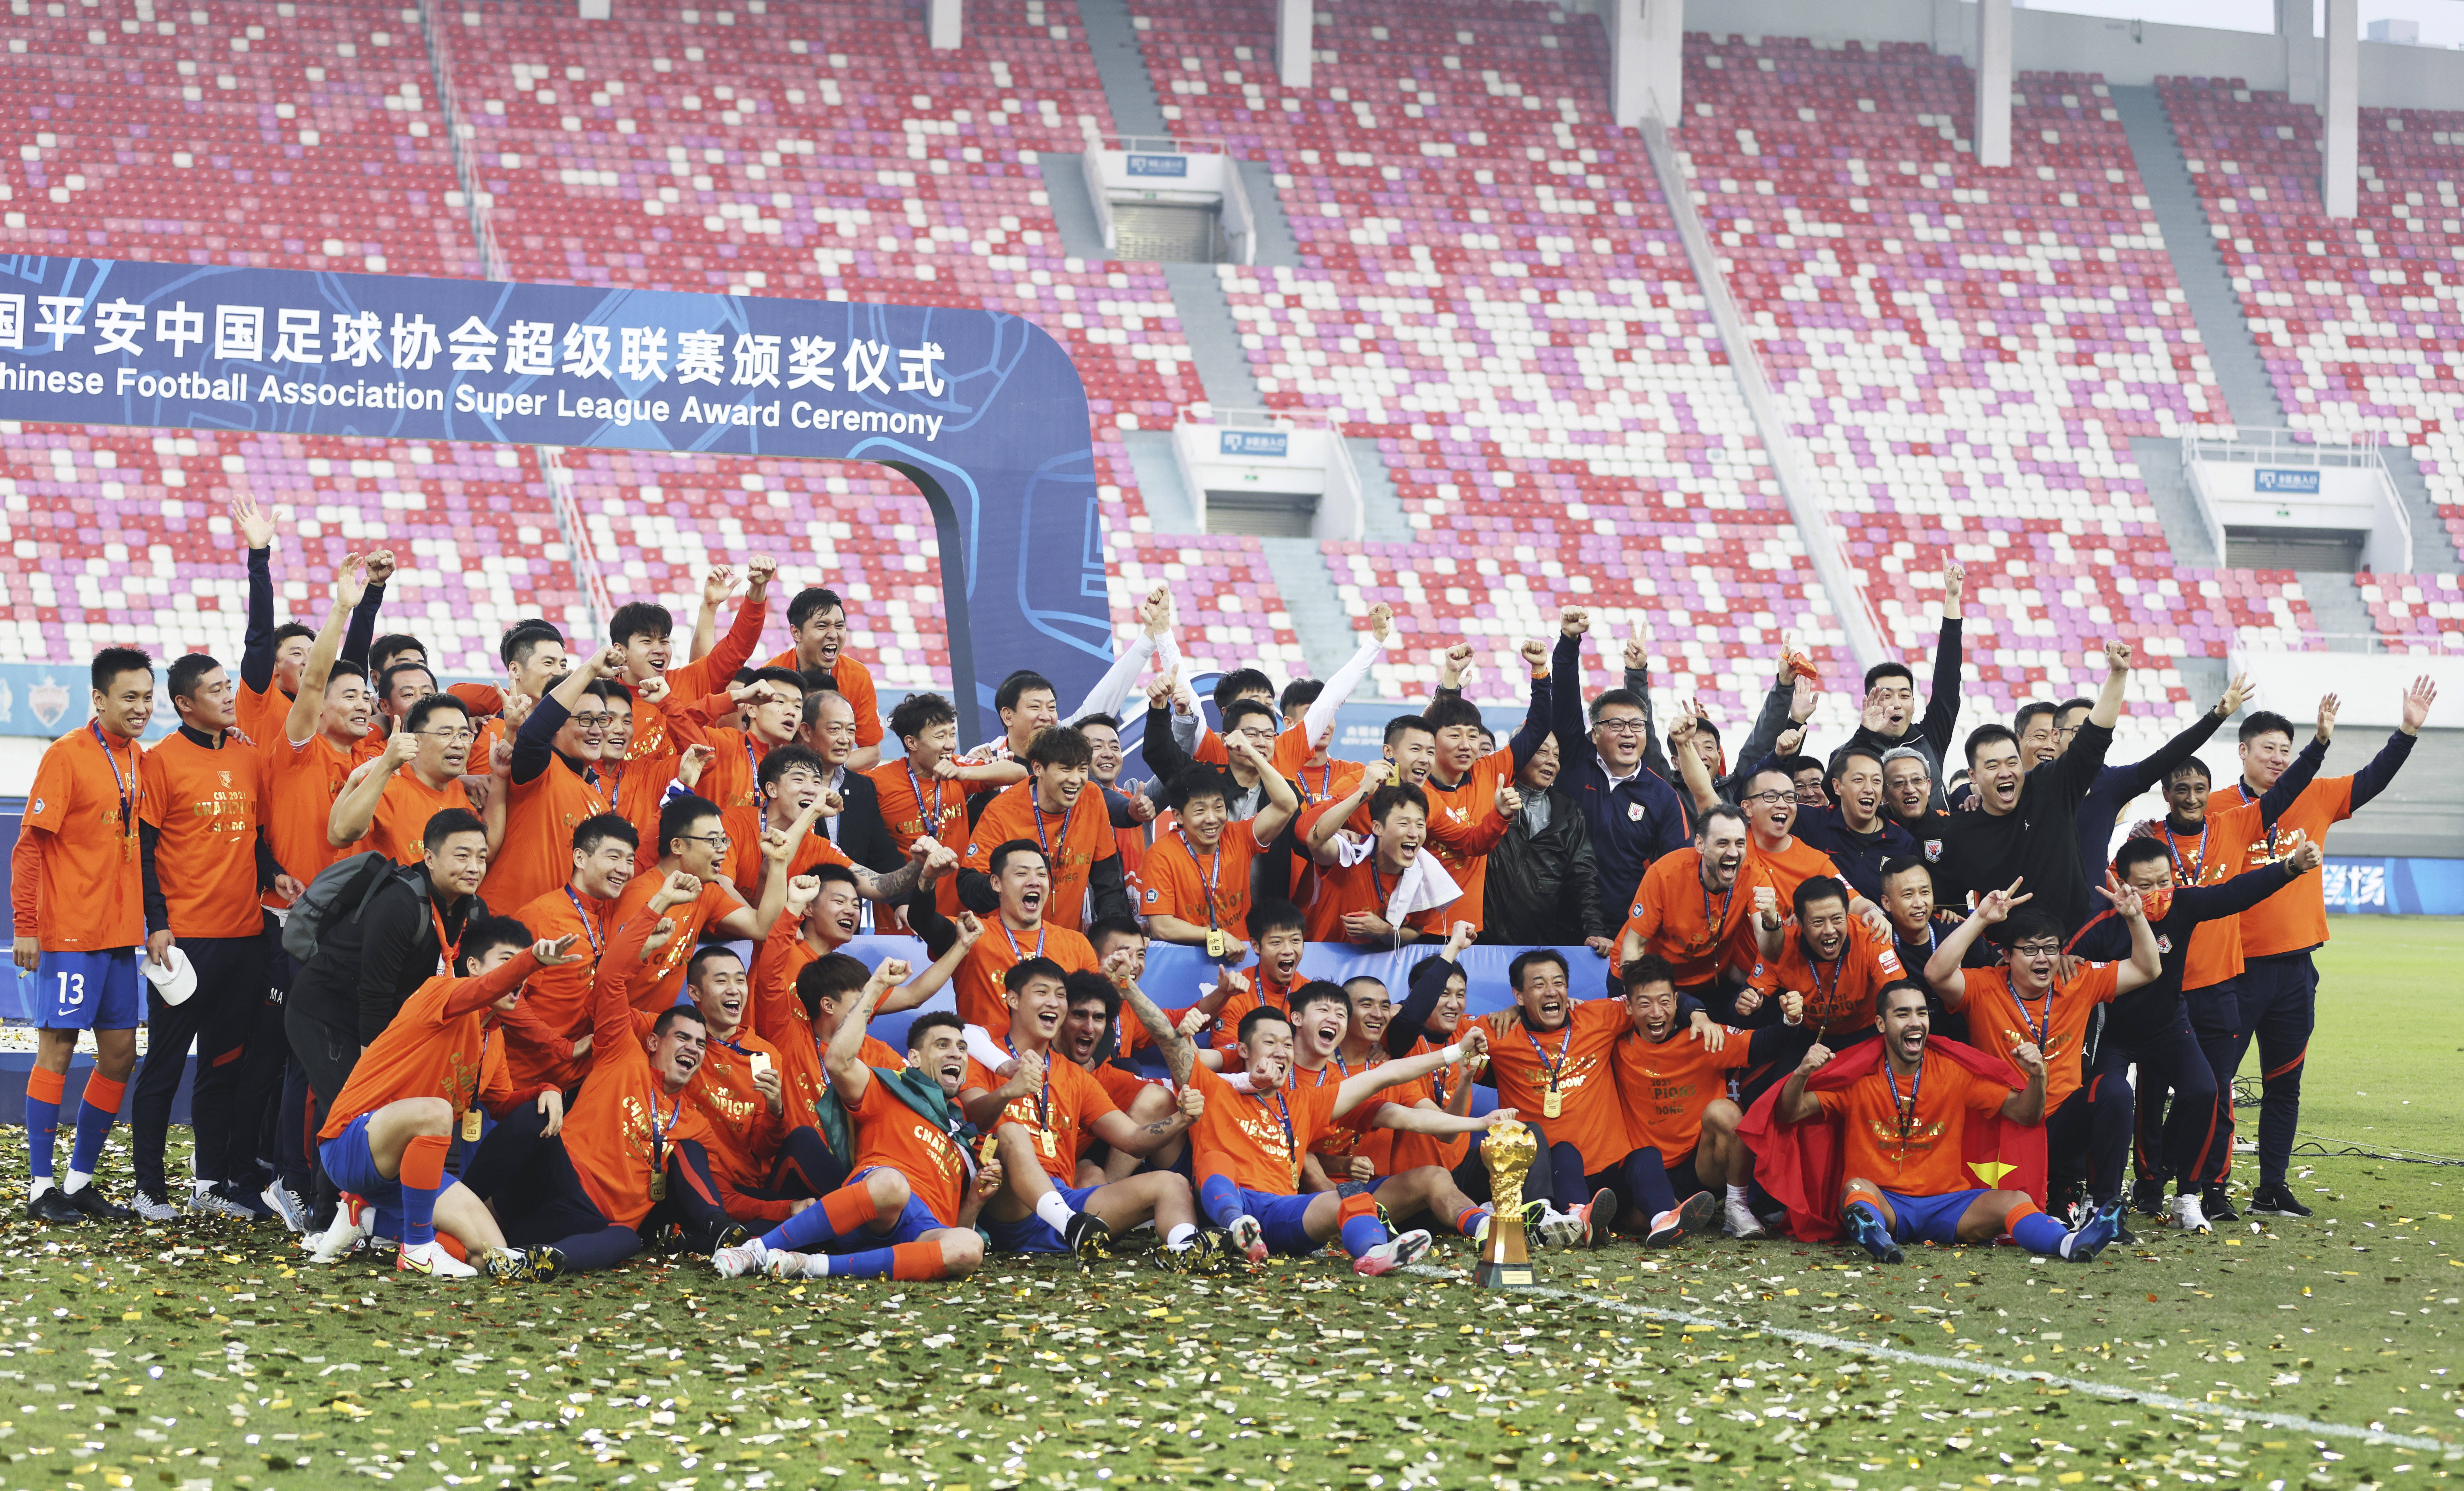 最终,山东泰山队以总积分51分夺得本赛季中超联赛冠